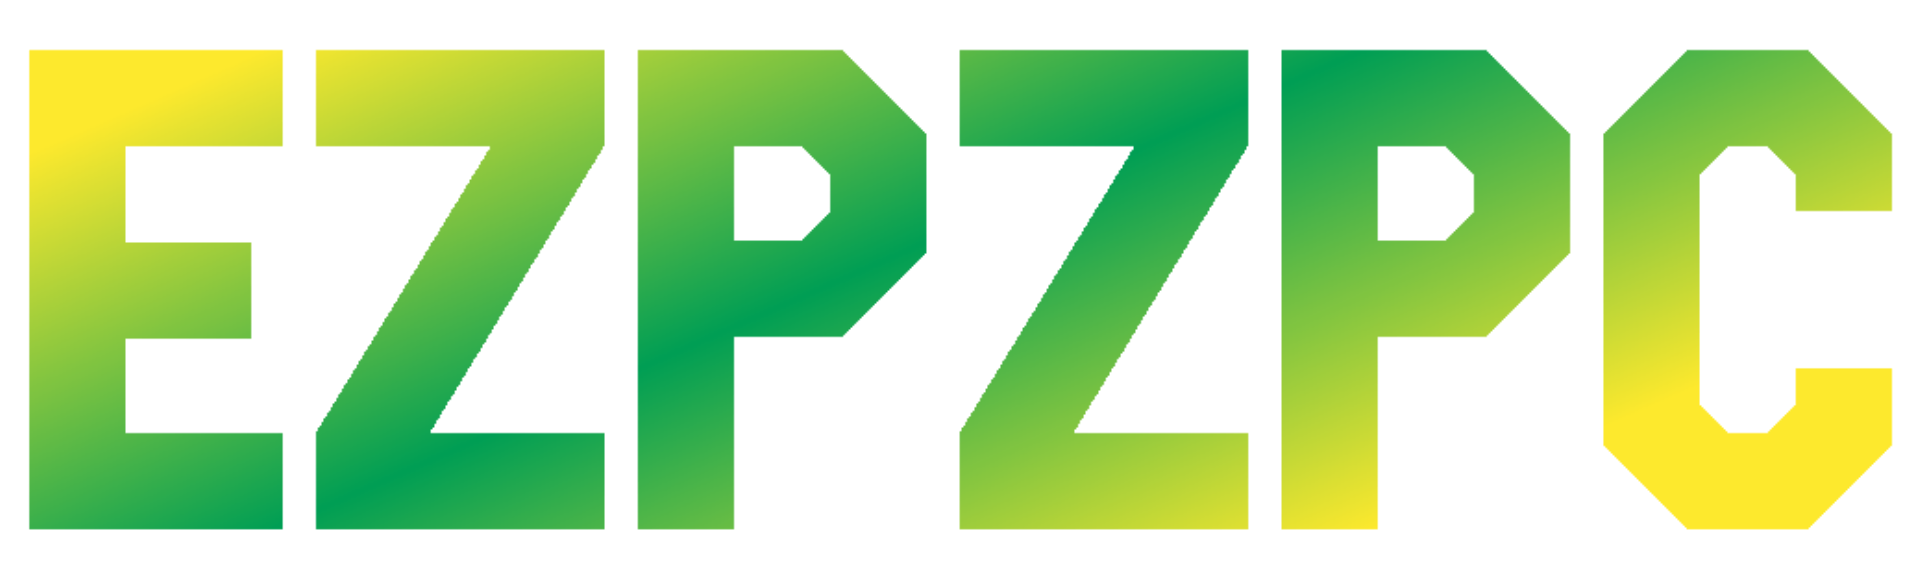 EZPZPC logo